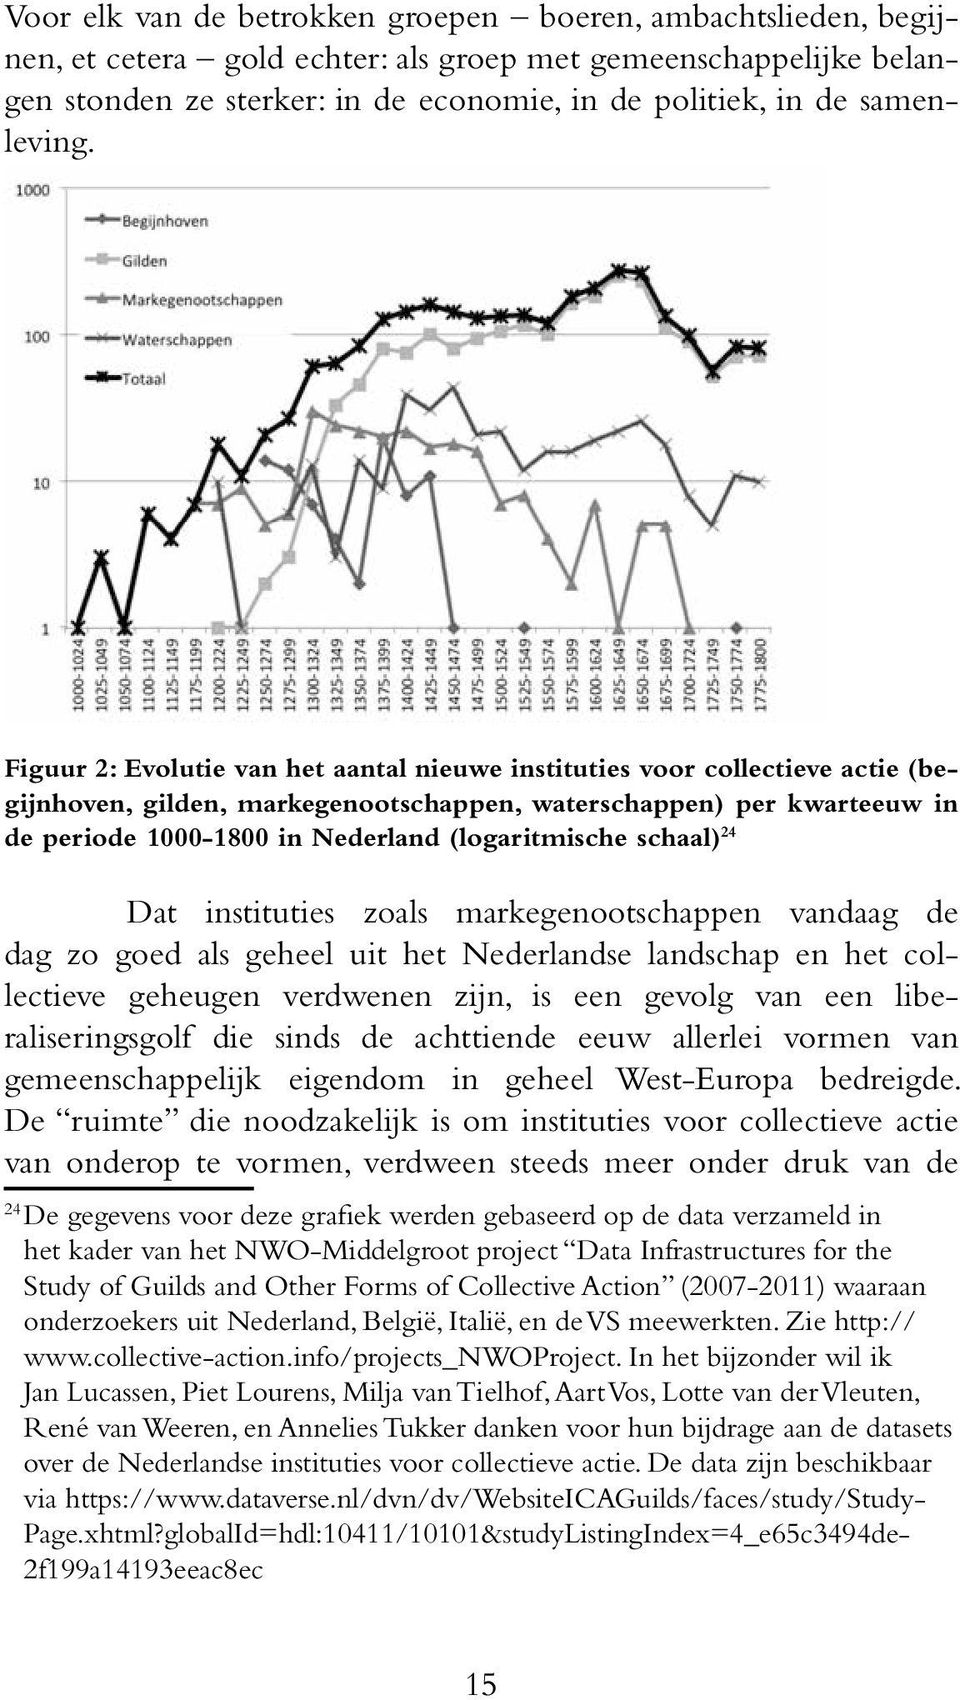 Figuur 2: Evolutie van het aantal nieuwe instituties voor collectieve actie (begijnhoven, gilden, markegenootschappen, waterschappen) per kwarteeuw in de periode 1000-1800 in Nederland (logaritmische